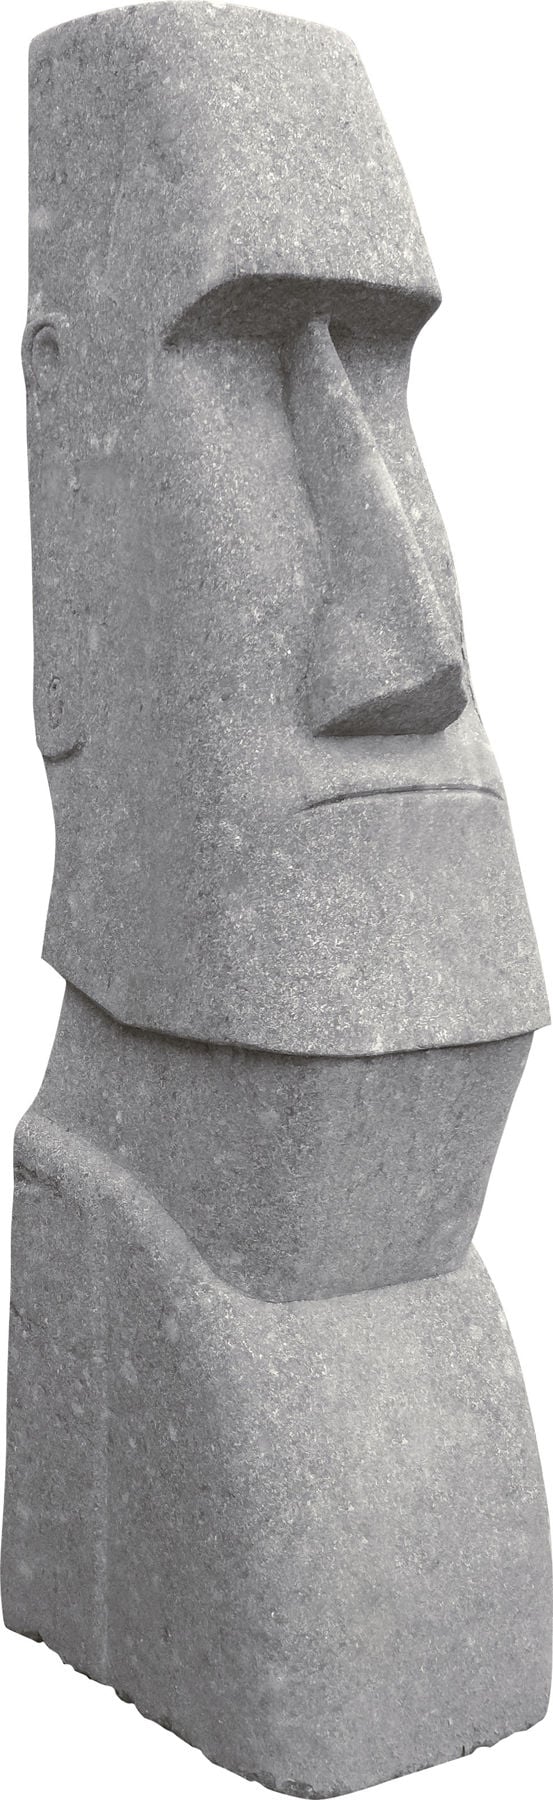 Small Stone Moai Head Ornament